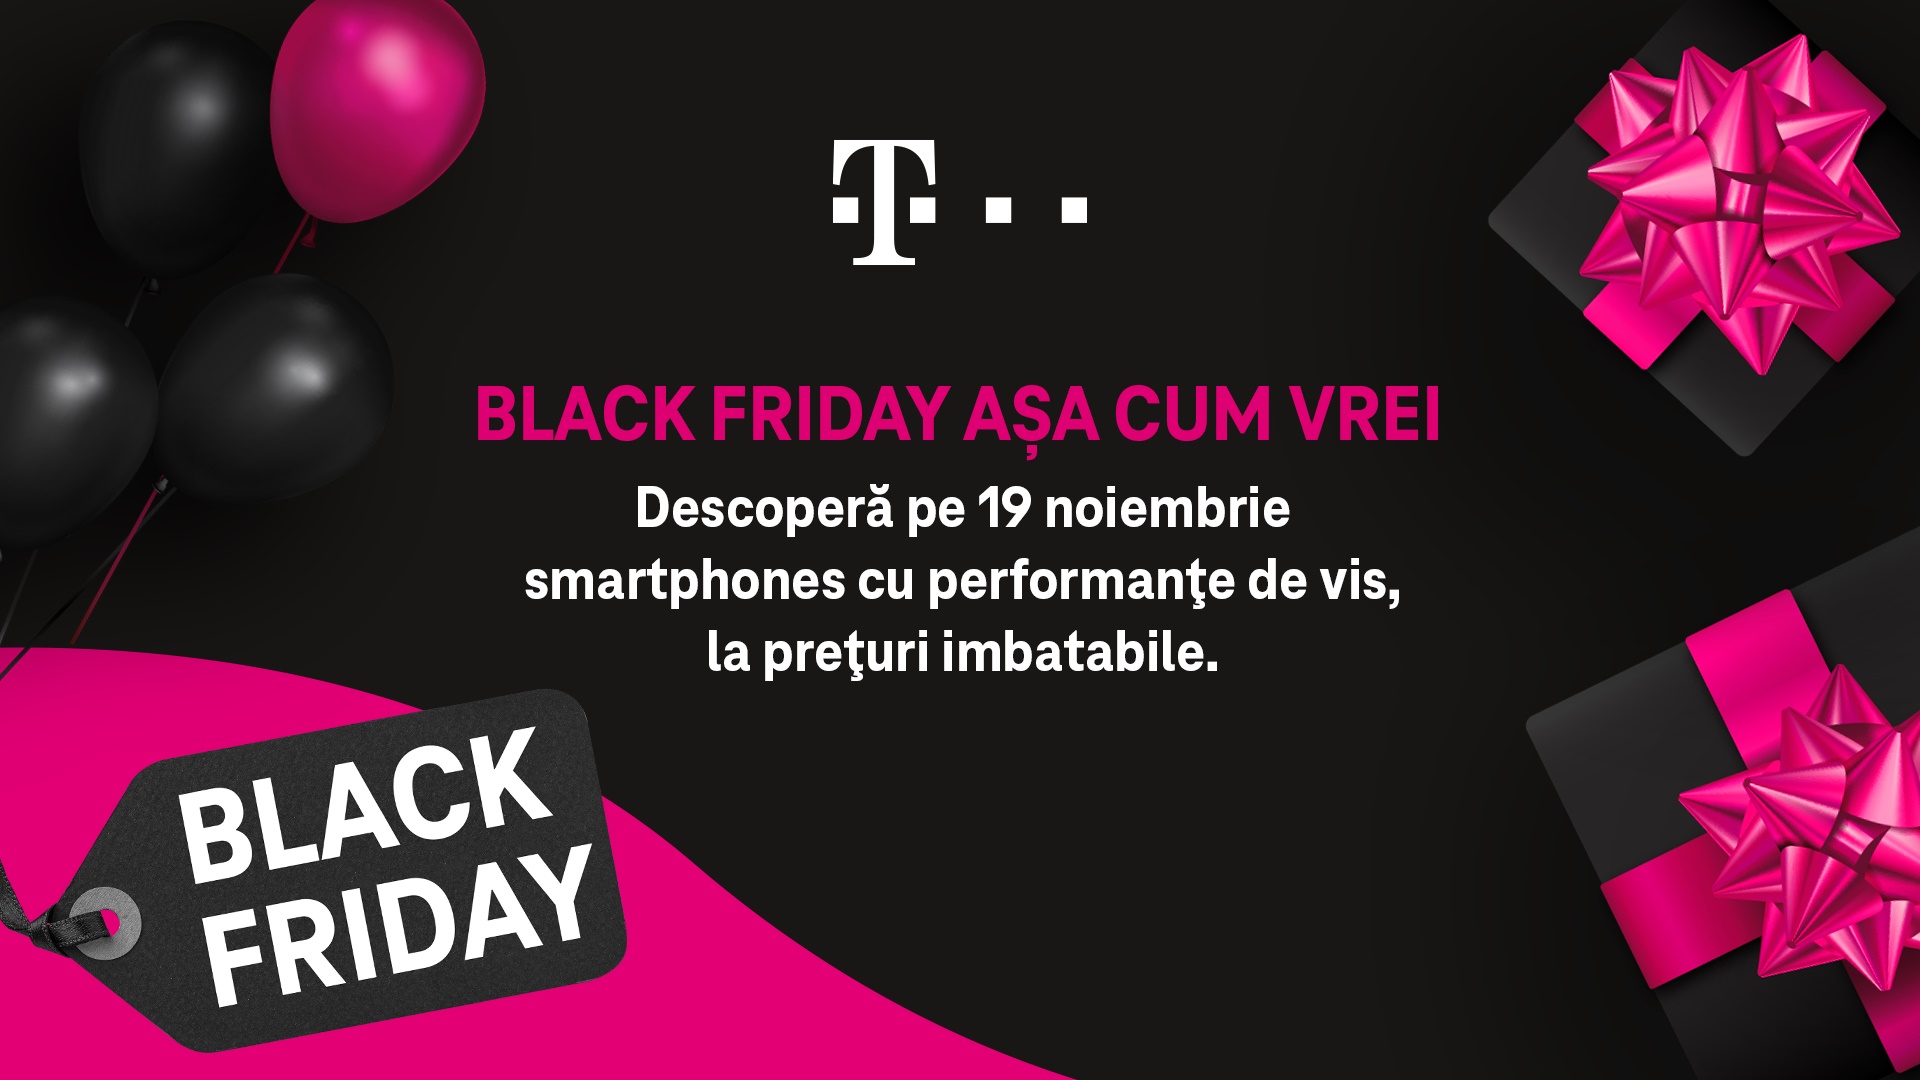 Telekom Romania Mobile pregăteşte un Black Friday aşa cum vrei